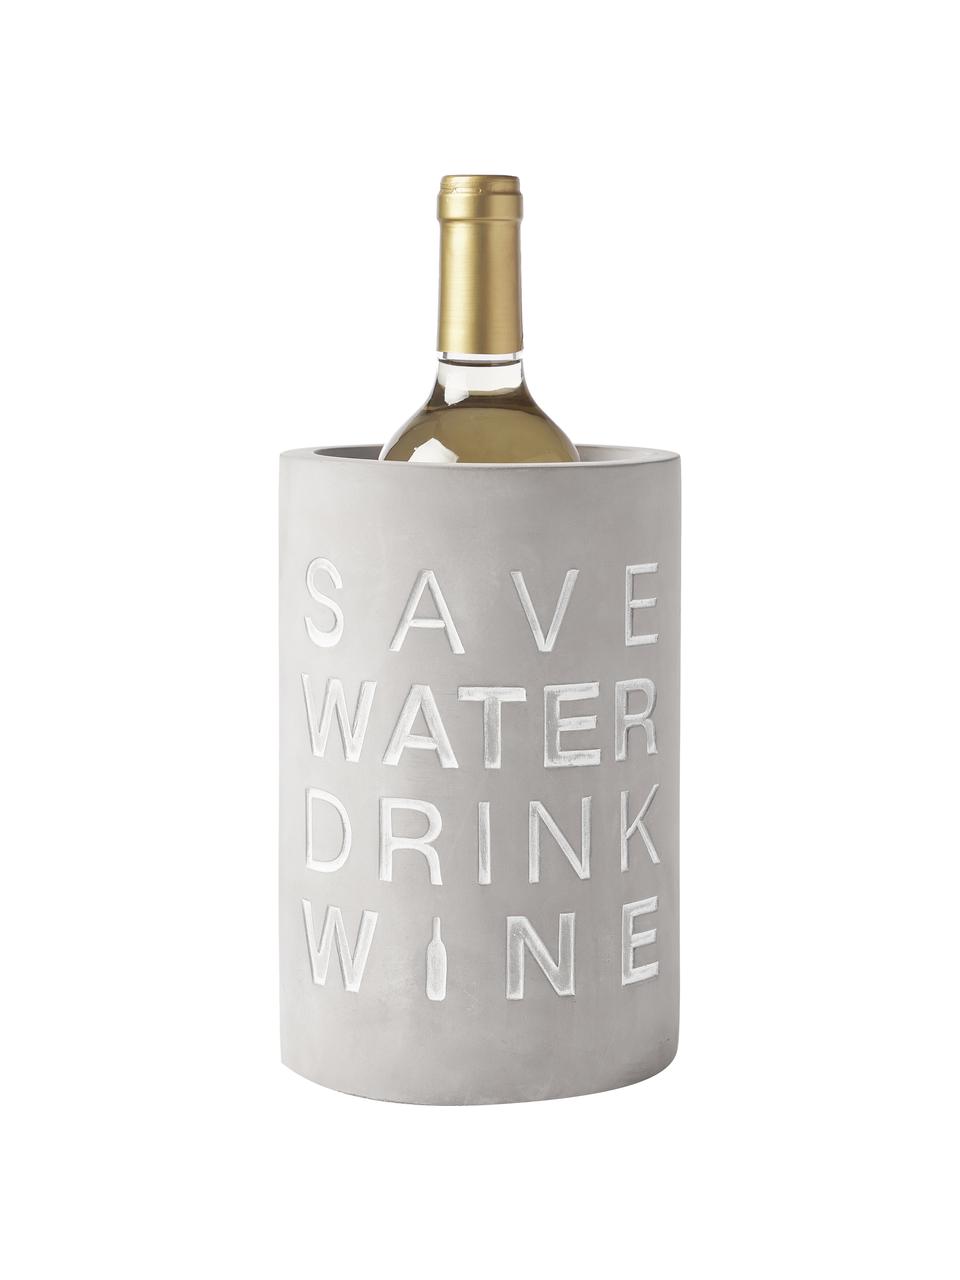 Flaschenkühler Drink Wine in Grau, Beton, Grau, Weiß, Ø 14 x H 21 cm